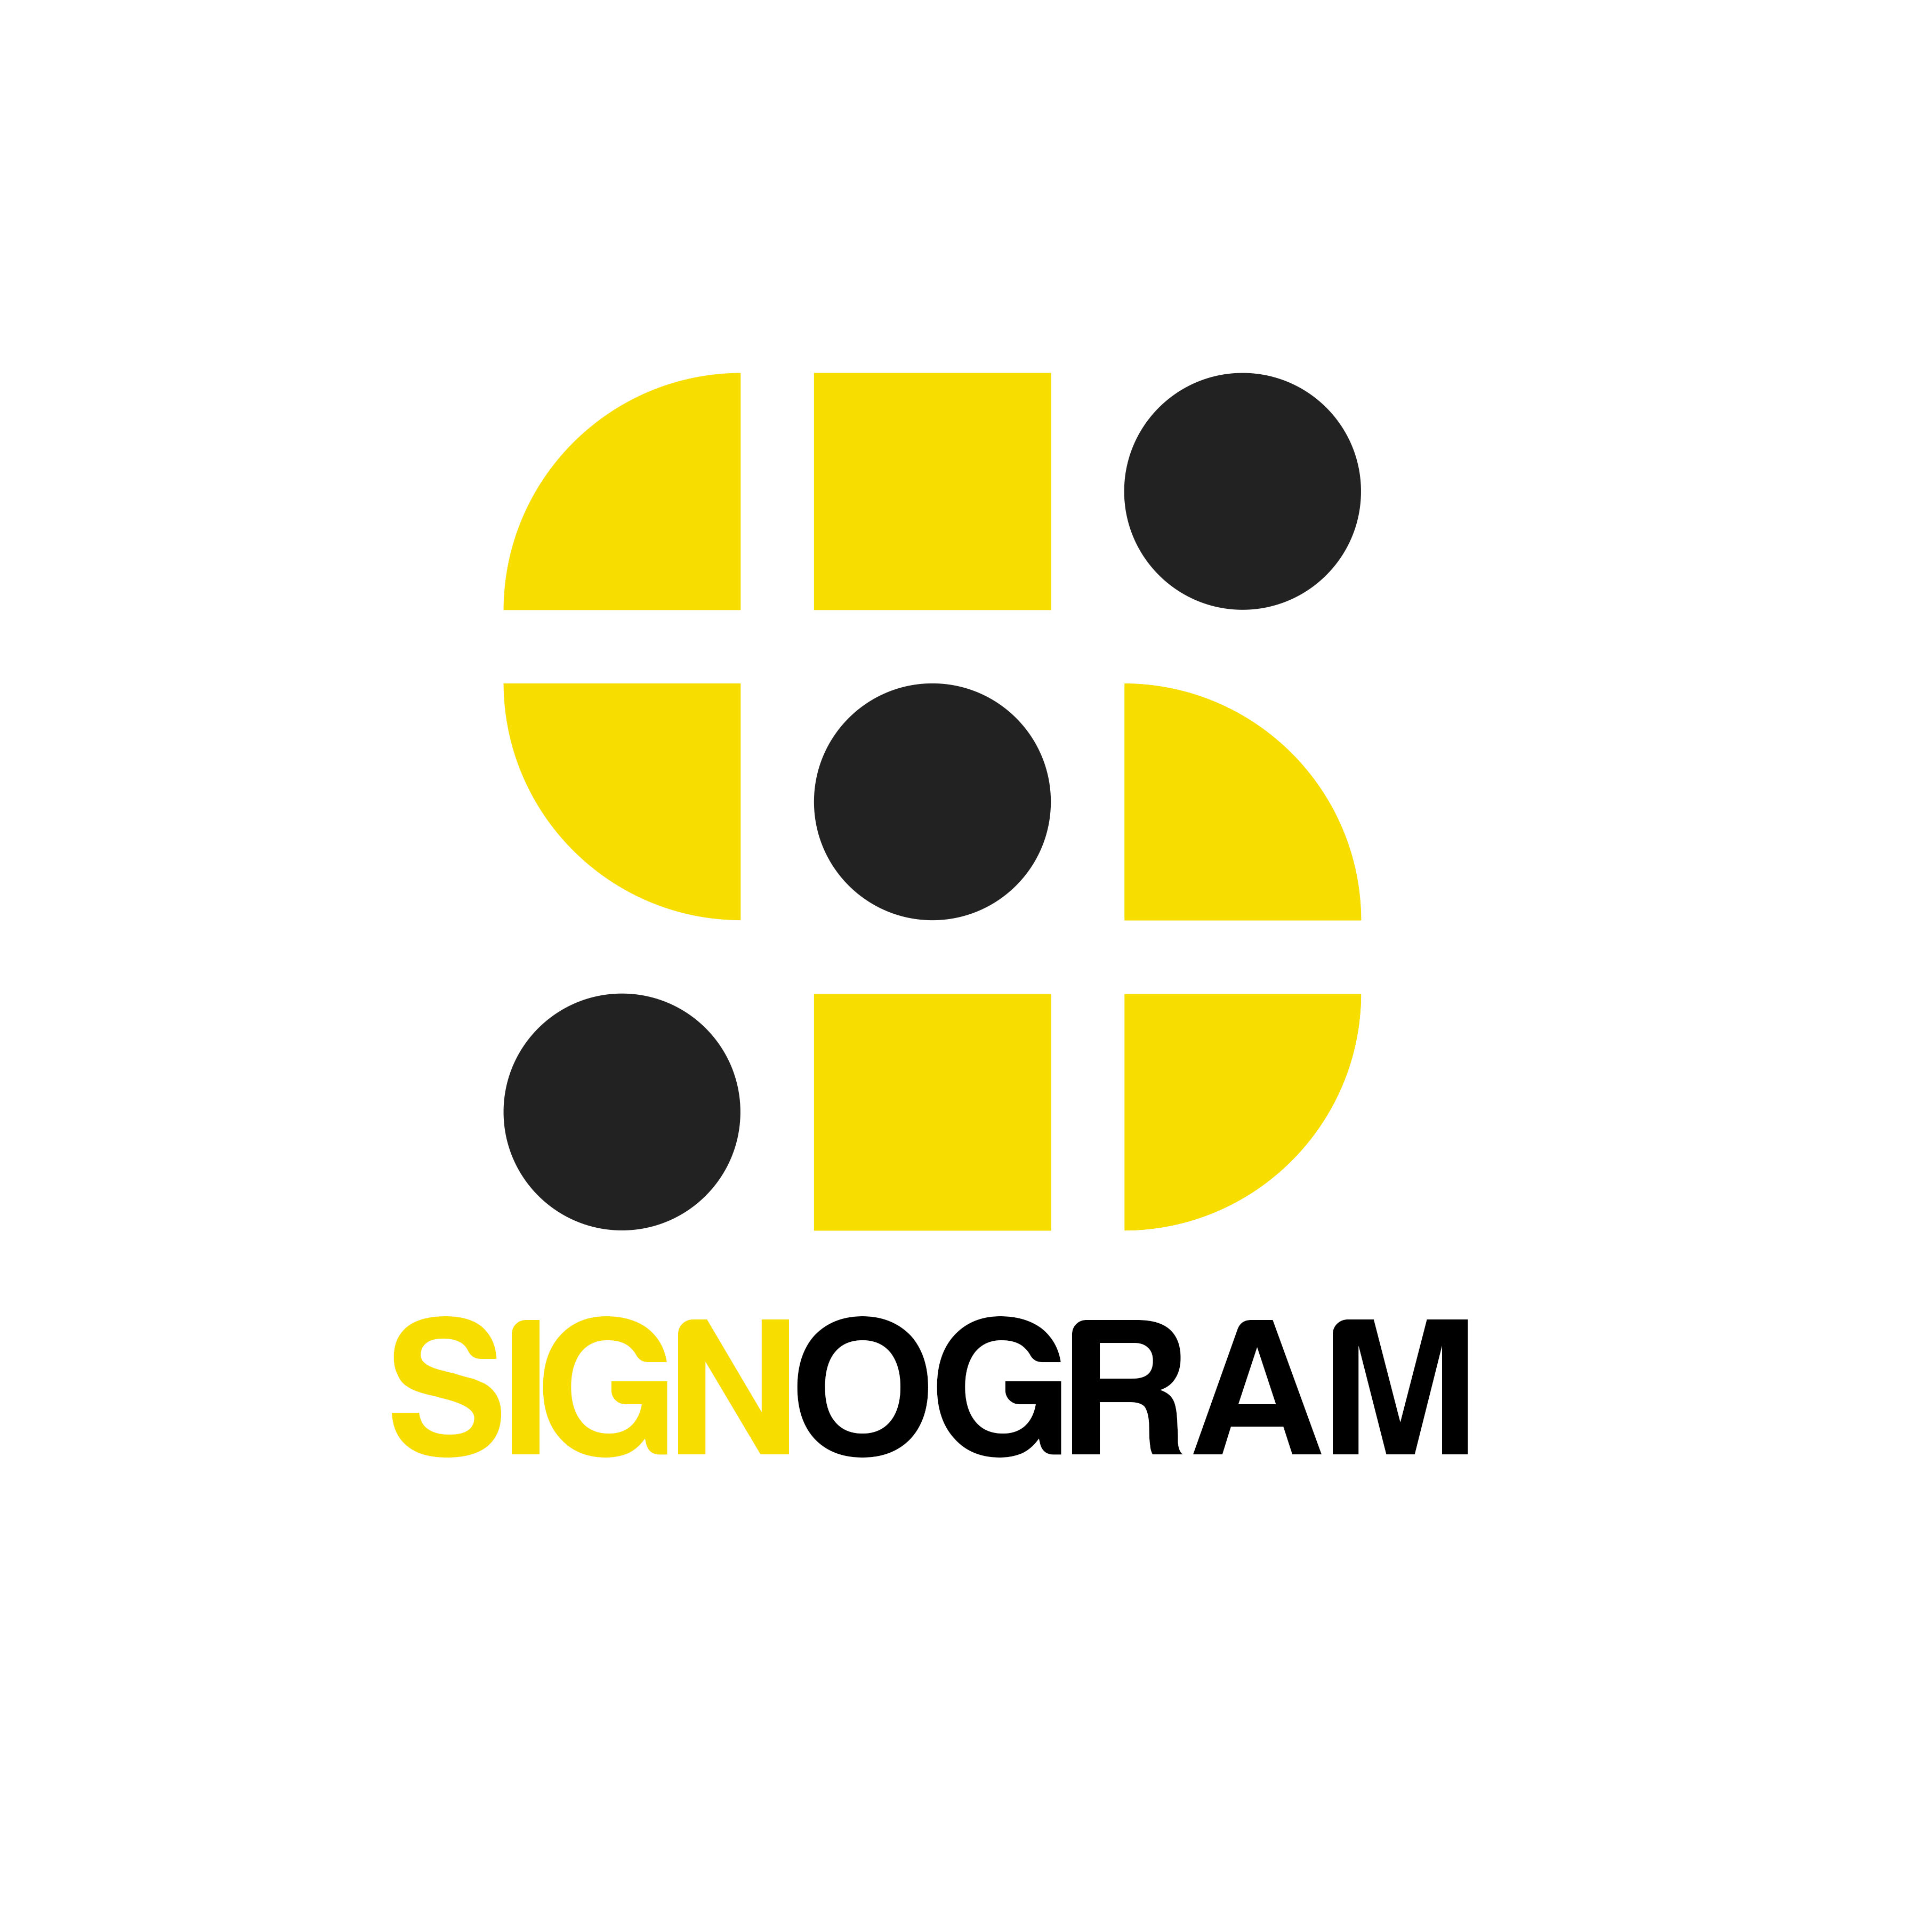 Signogram